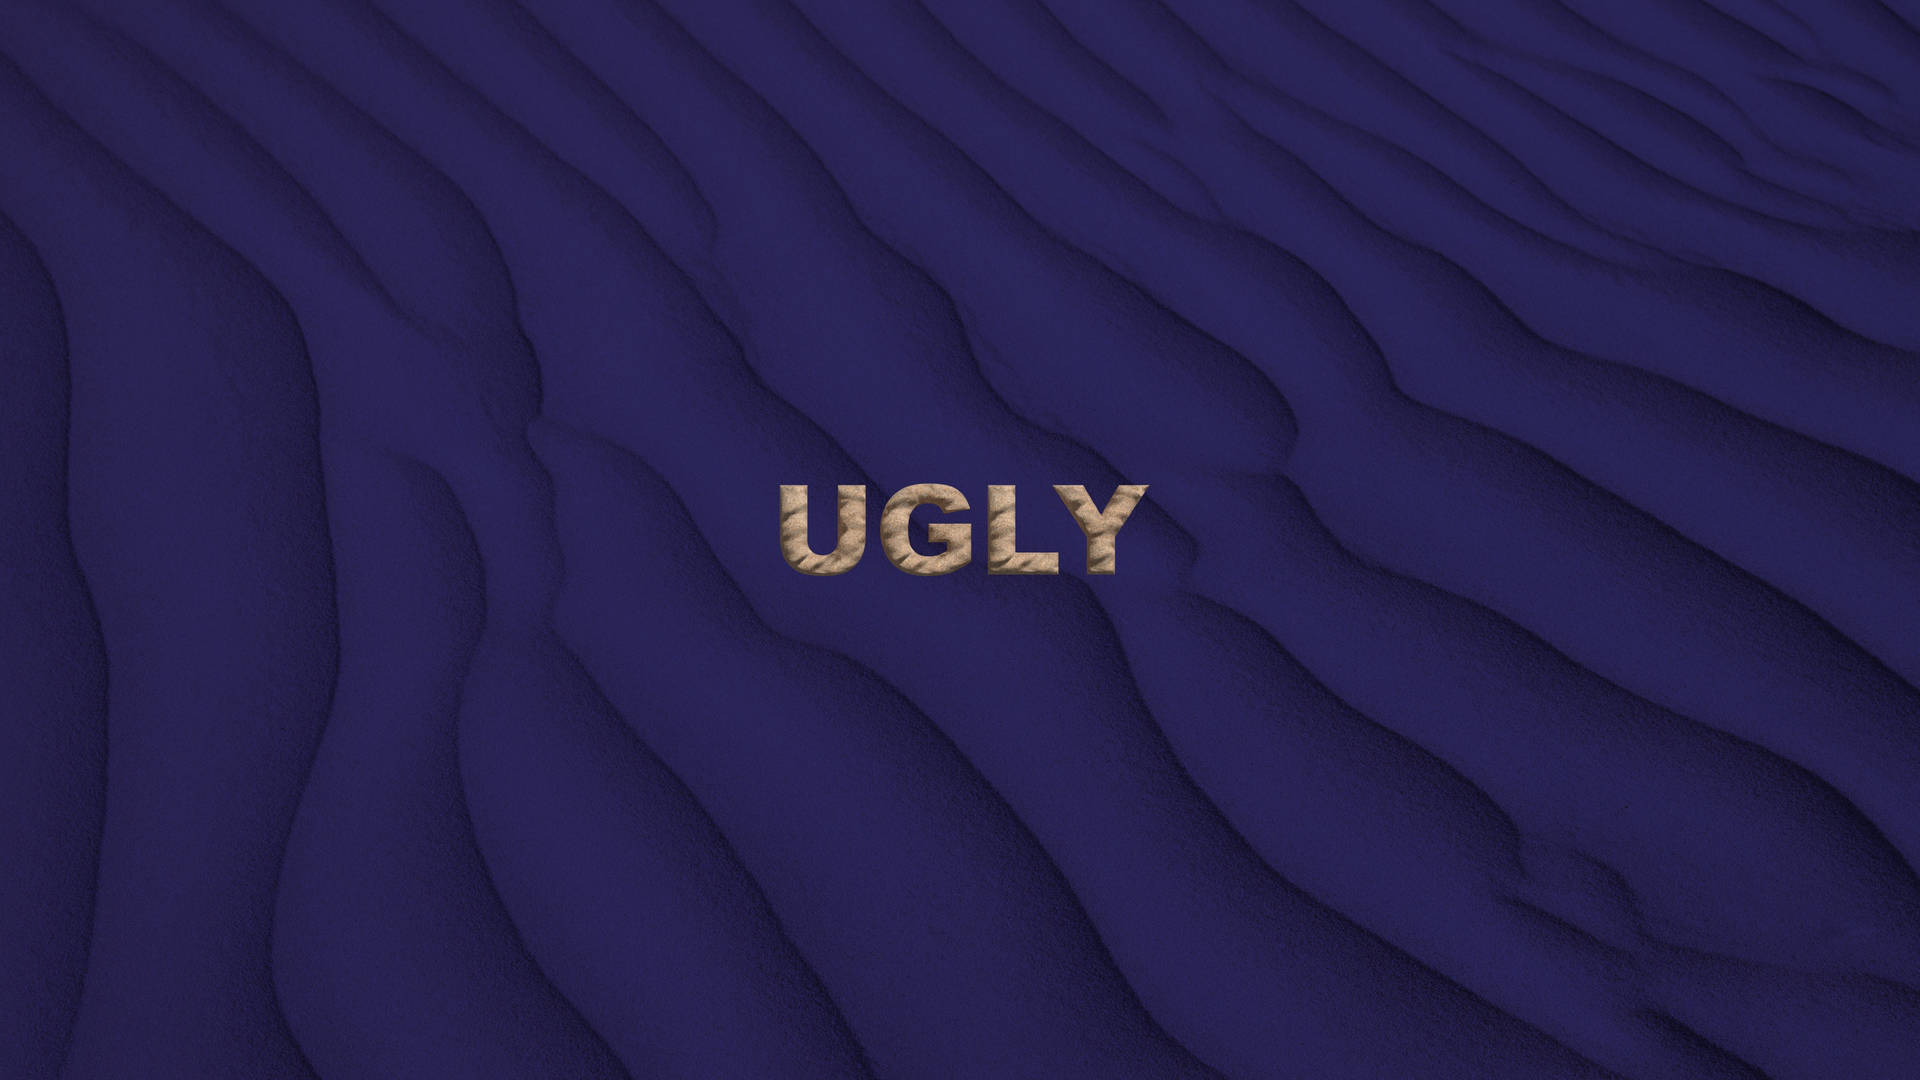 Ugly Violet Sand Wallpaper